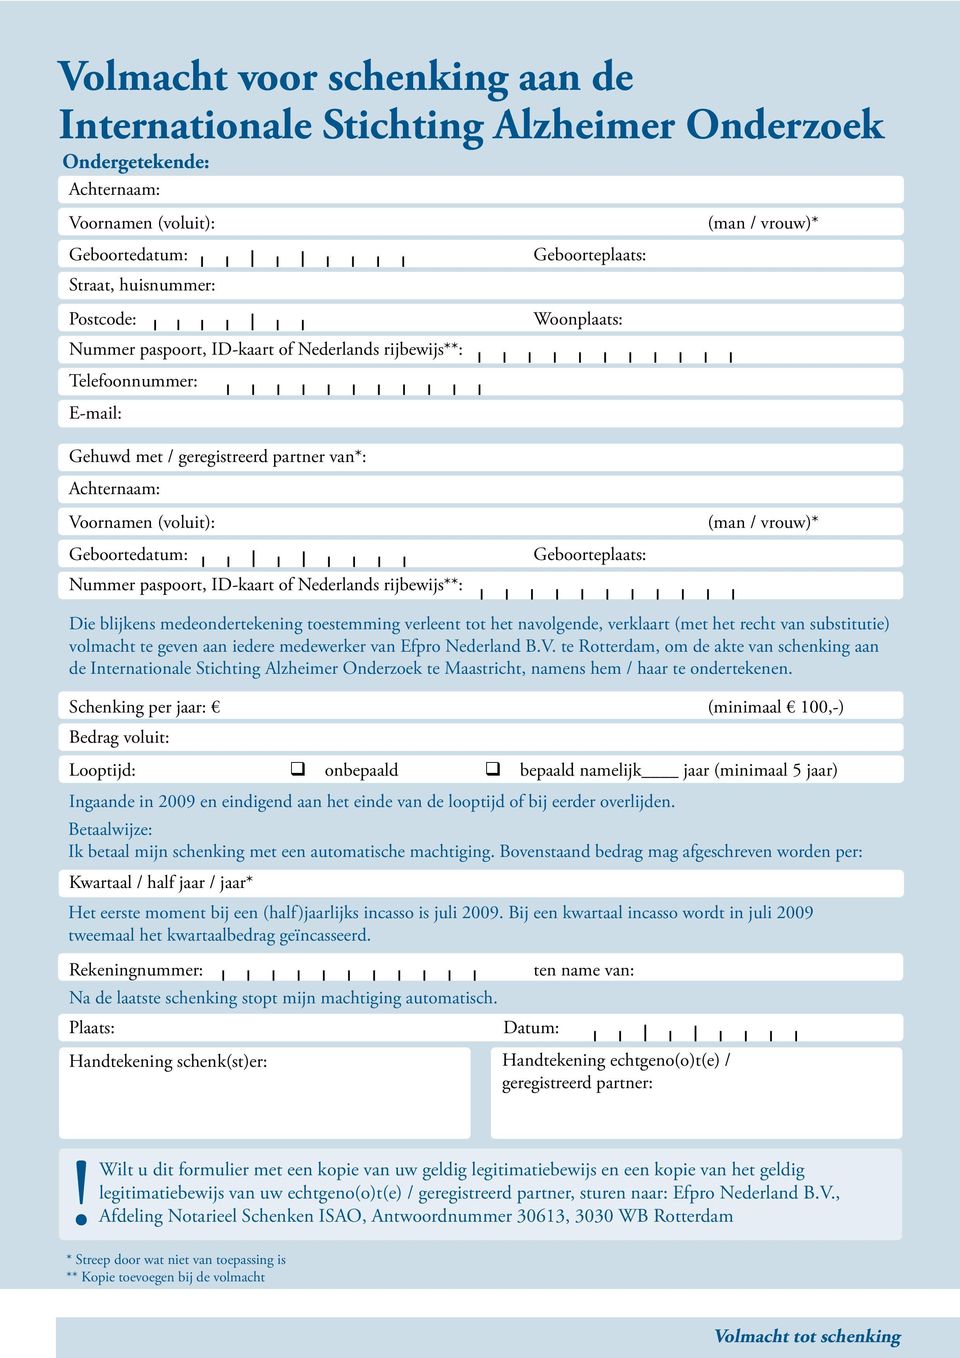 ID-kaart of Nederlands rijbewijs**: Geboorteplaats: (man / vrouw)* Die blijkens medeondertekening toestemming verleent tot het navolgende, verklaart (met het recht van substitutie) volmacht te geven